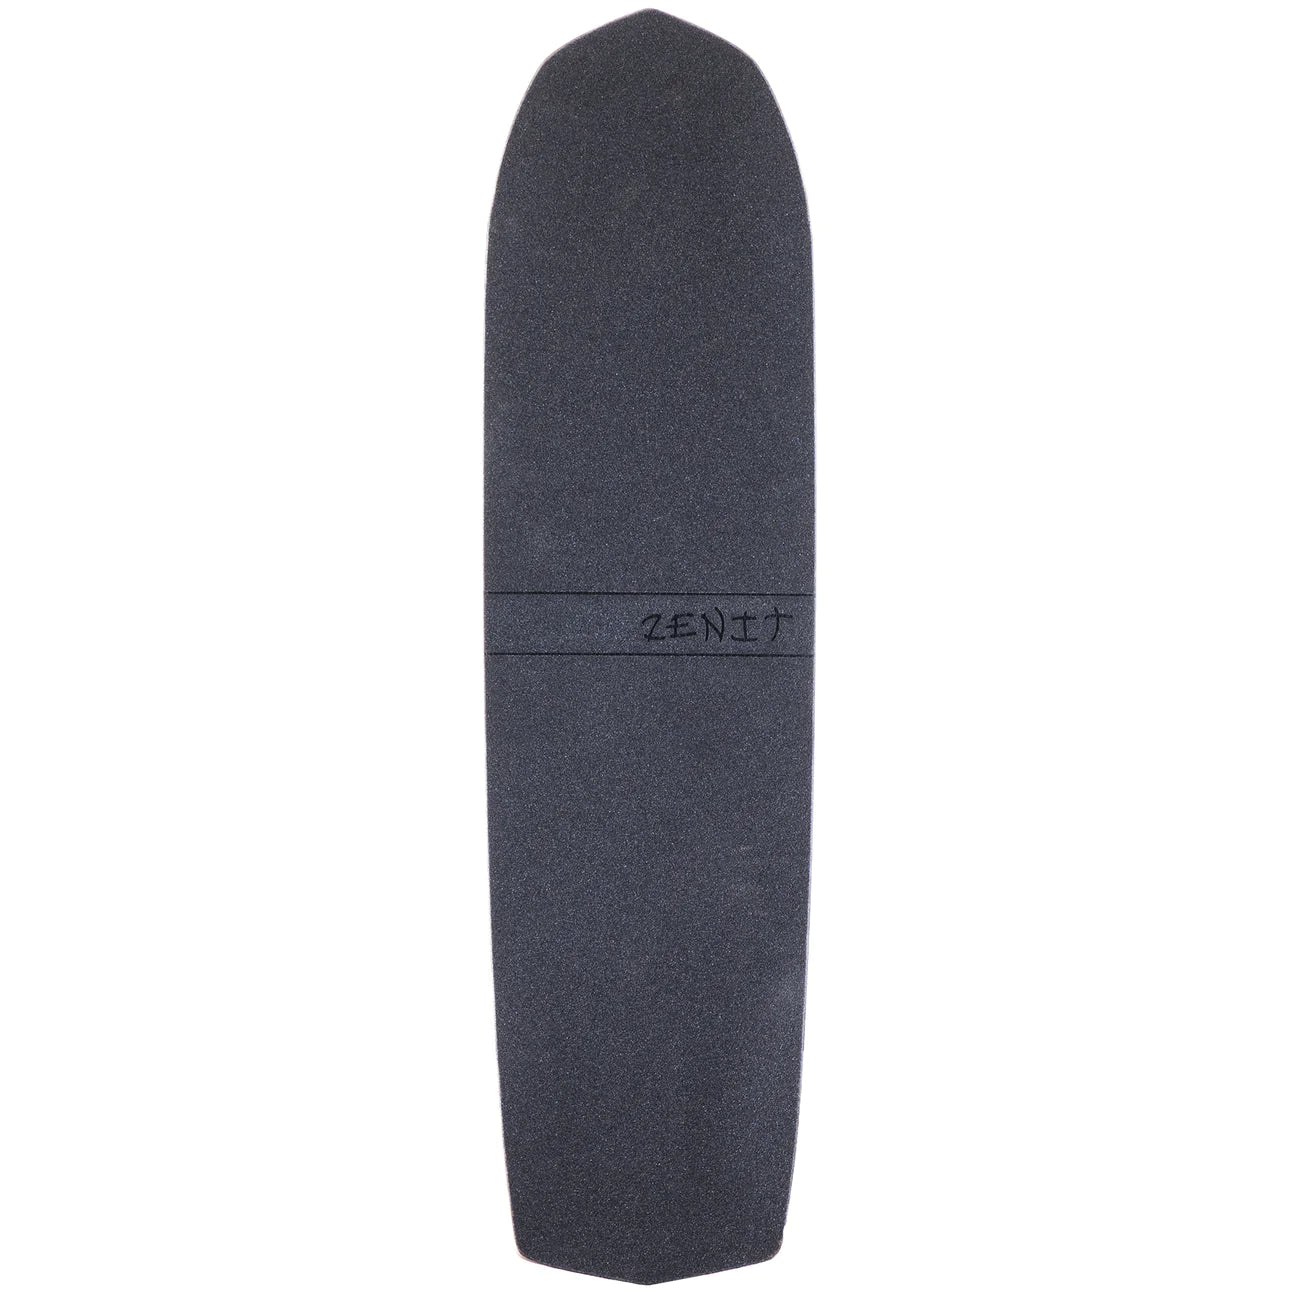 Zenit: Mini Rocket V3 Longboard Skateboard Deck